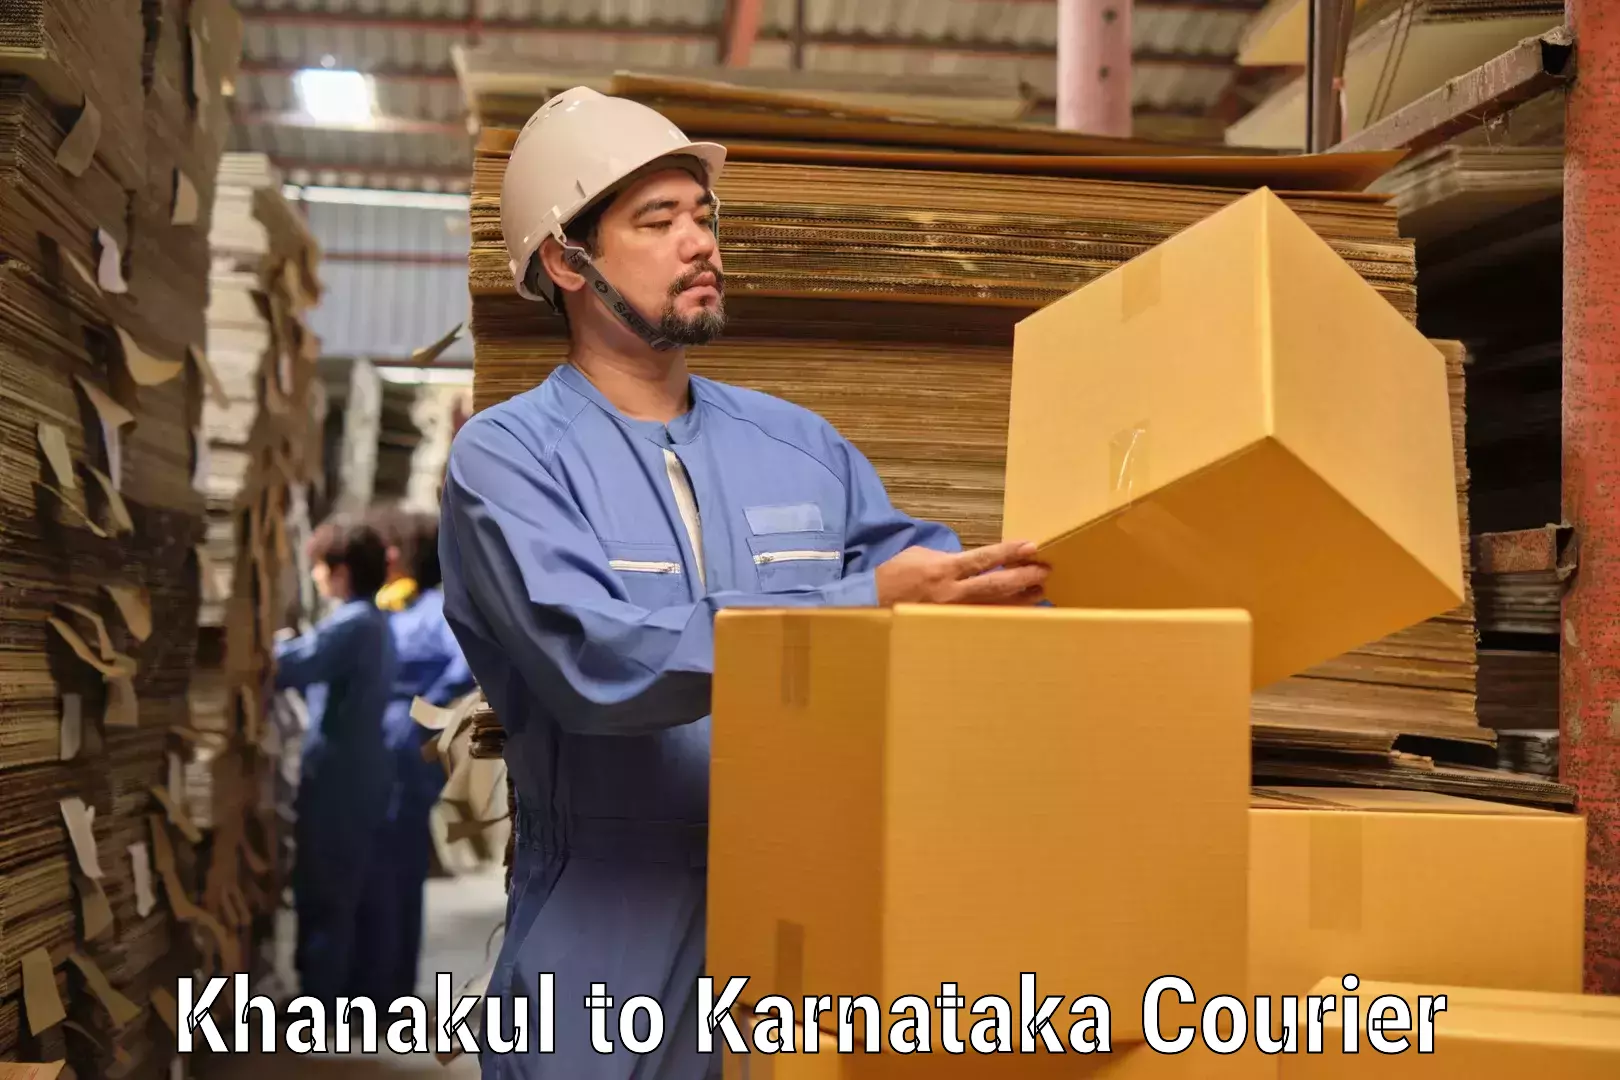 Business courier solutions Khanakul to Karnataka